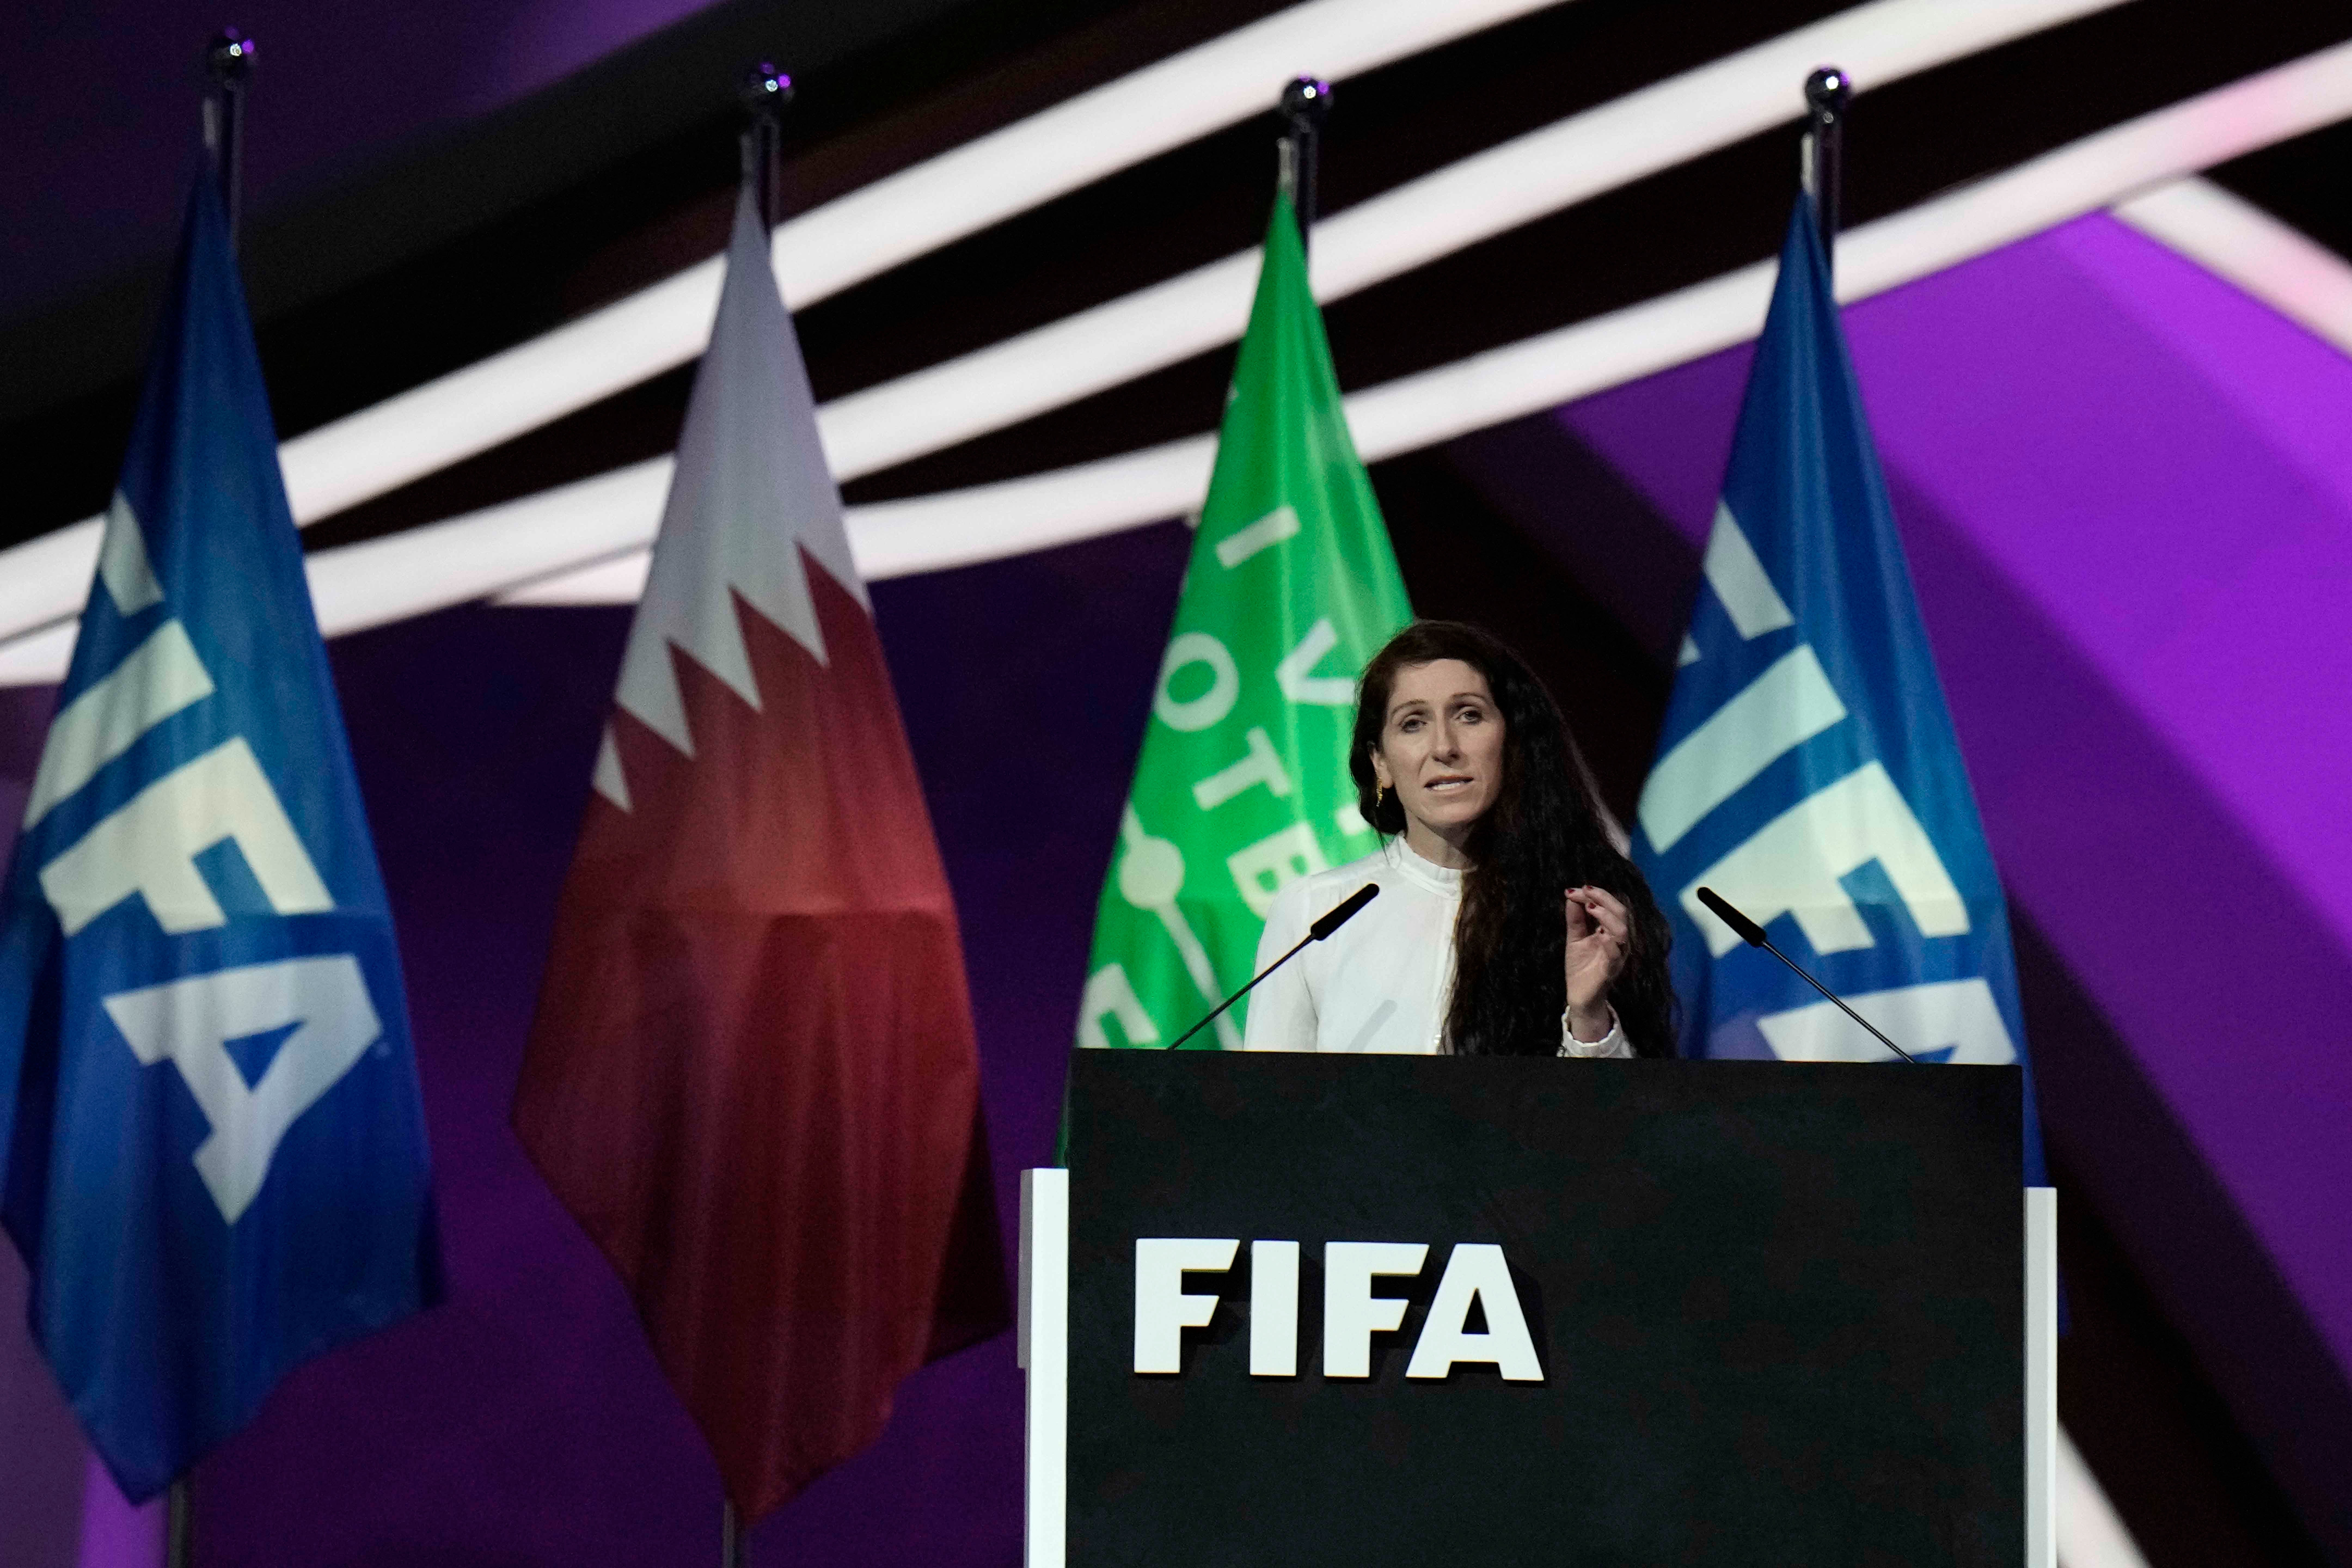 رئيسة الاتحاد النرويجي لكرة القدم ليز كلايفينيس تتحدث خلال مؤتمر "الفيفا" في "مركز الدوحة للمعارض والمؤتمرات" في الدوحة، قطر، 31 مارس/آذار 2022. 